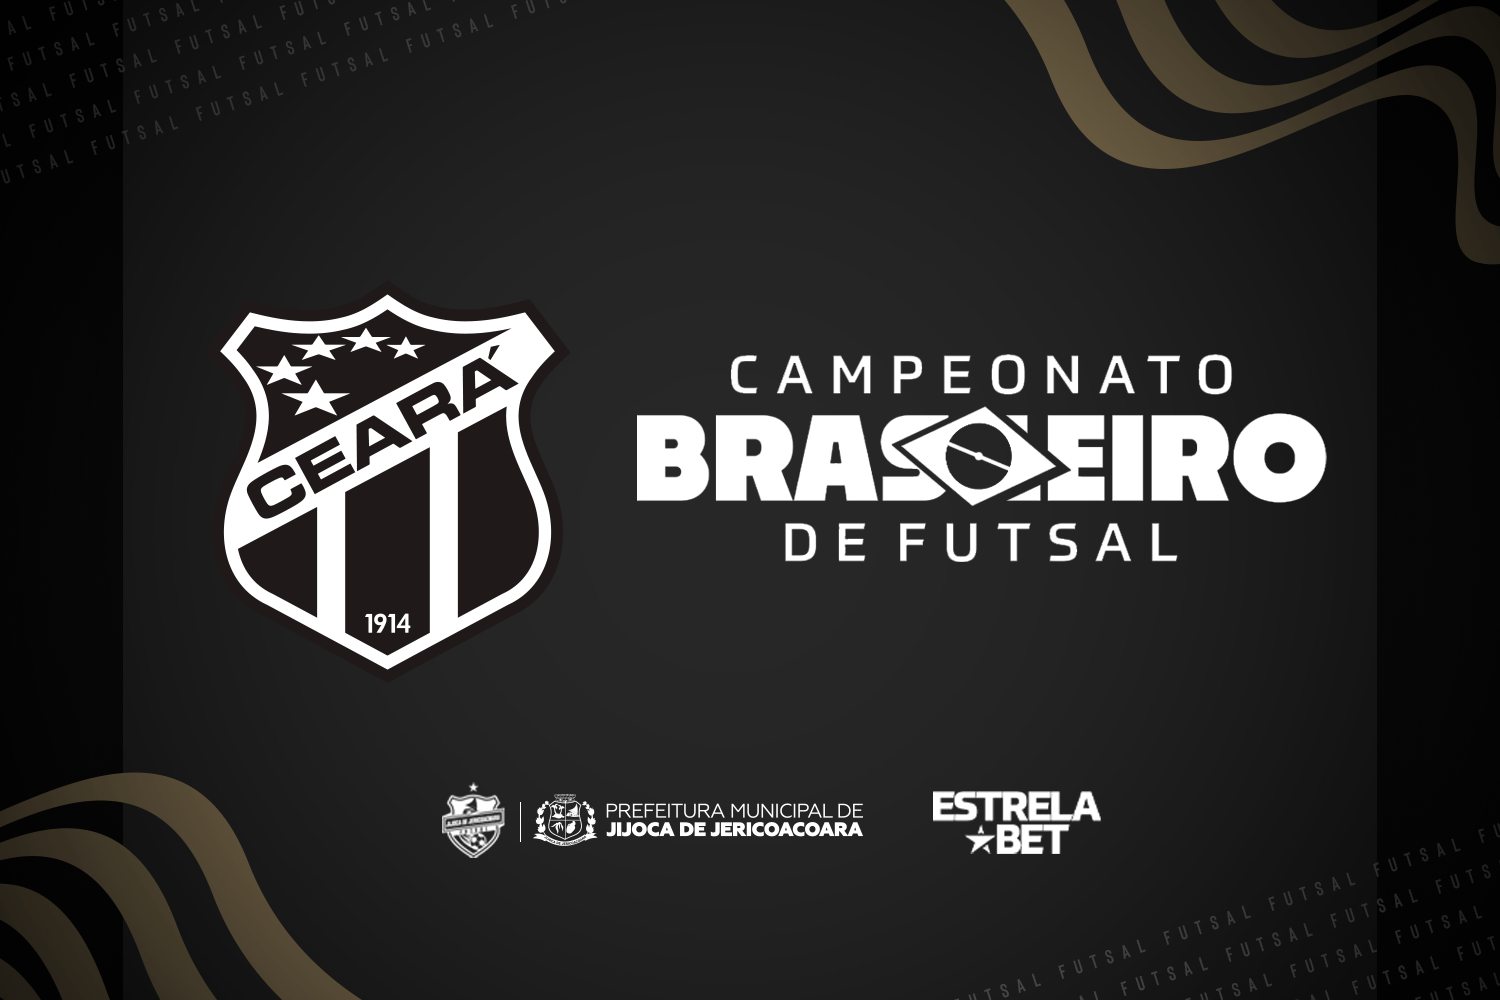 Futsal: Ceará Jijoca Futsal participará da primeira edição do Campeonato Brasileiro